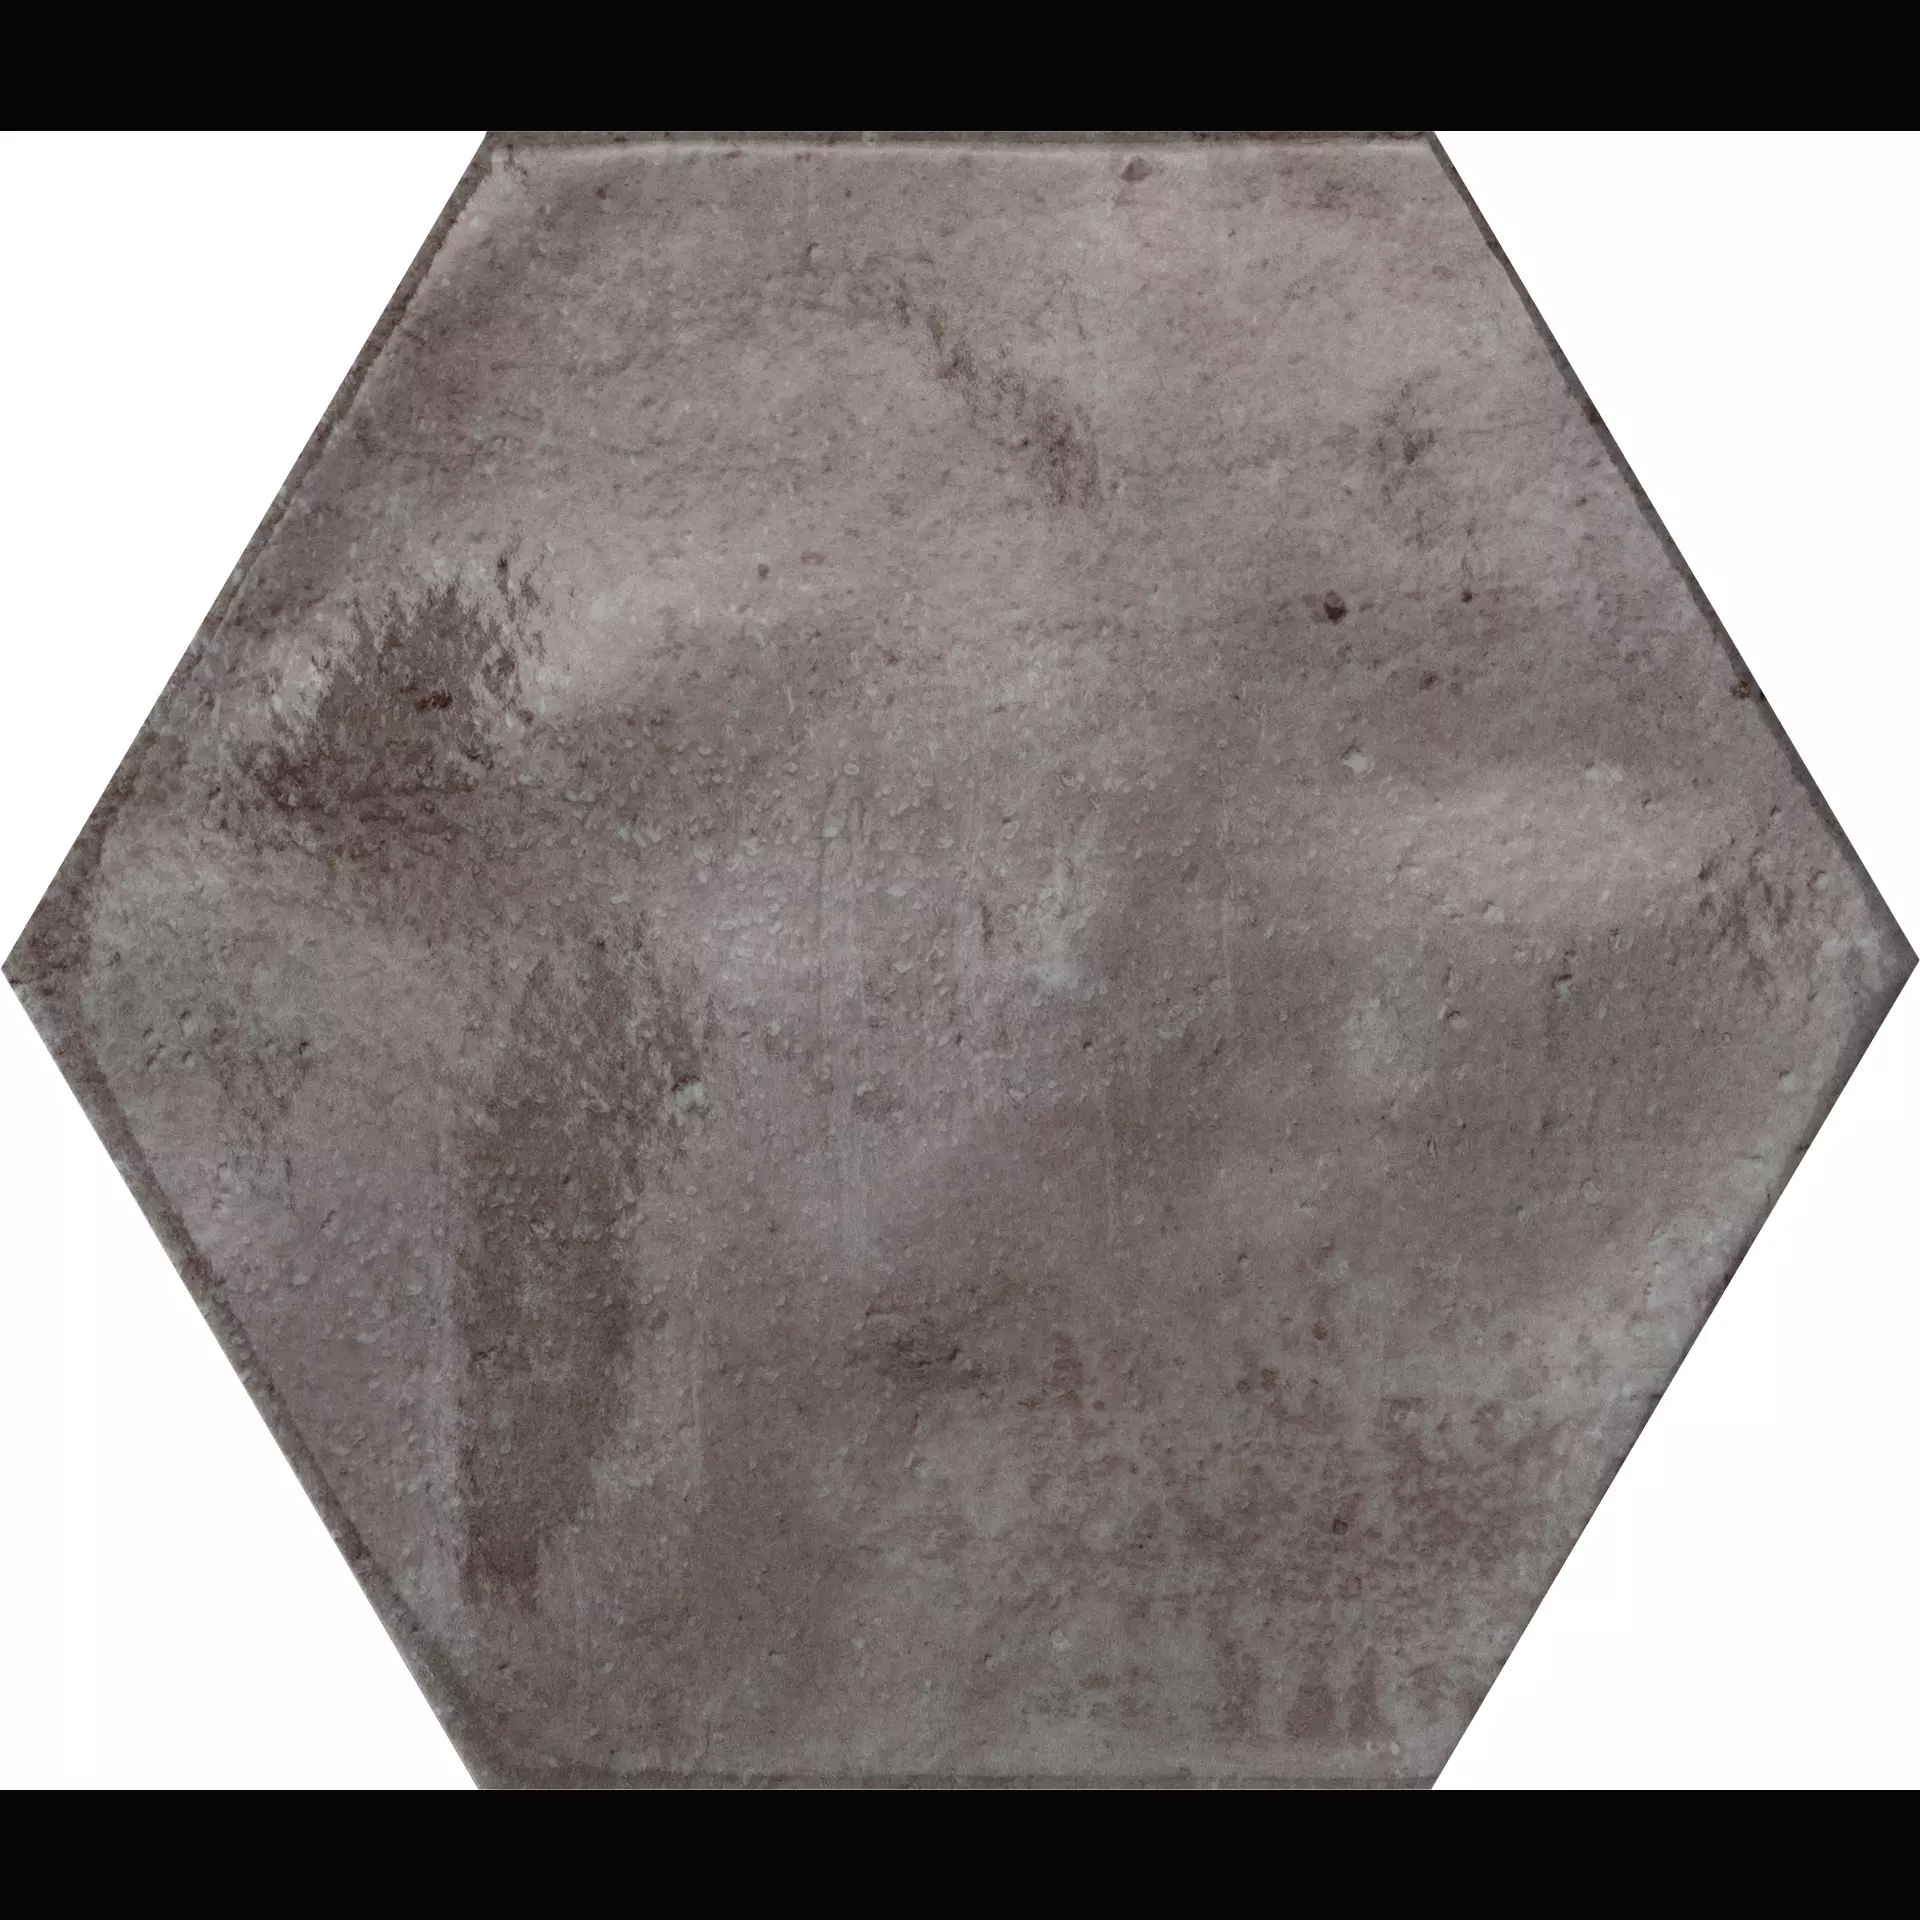 CIR Fuoritono Beige Naturale Hexagon 1072701 24x27,7cm 10mm